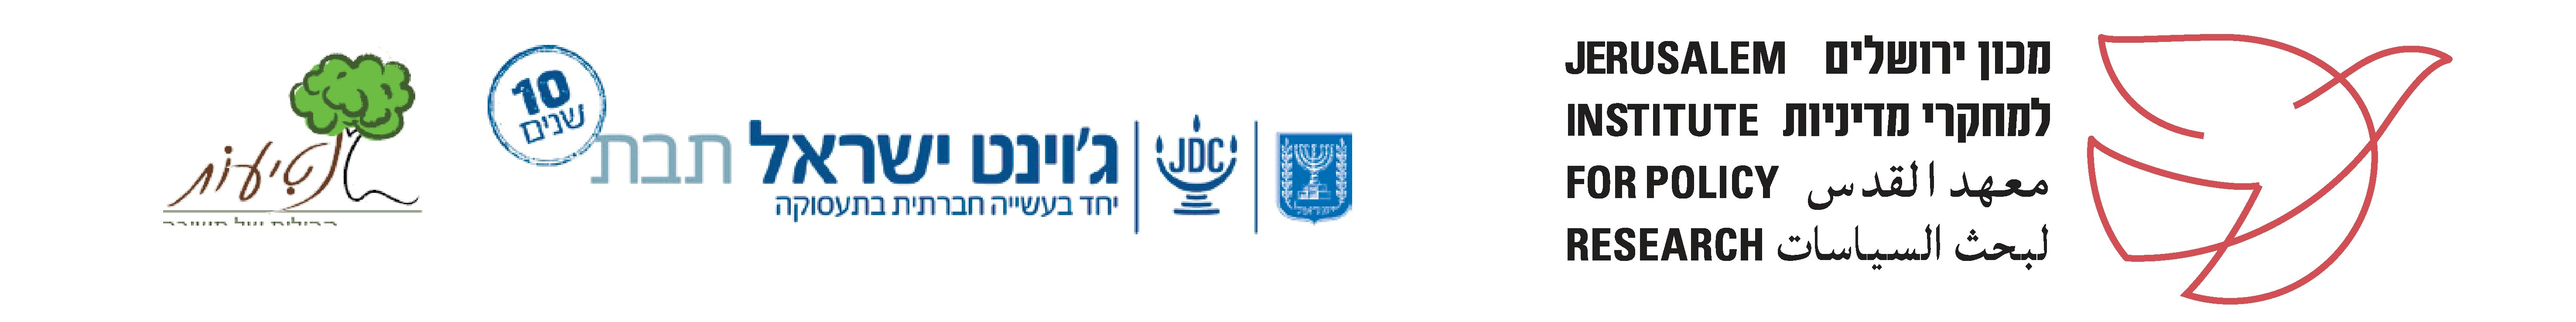 הכנס בשיתוף תבת ג'וינט ישראל ועמותת נטיעות